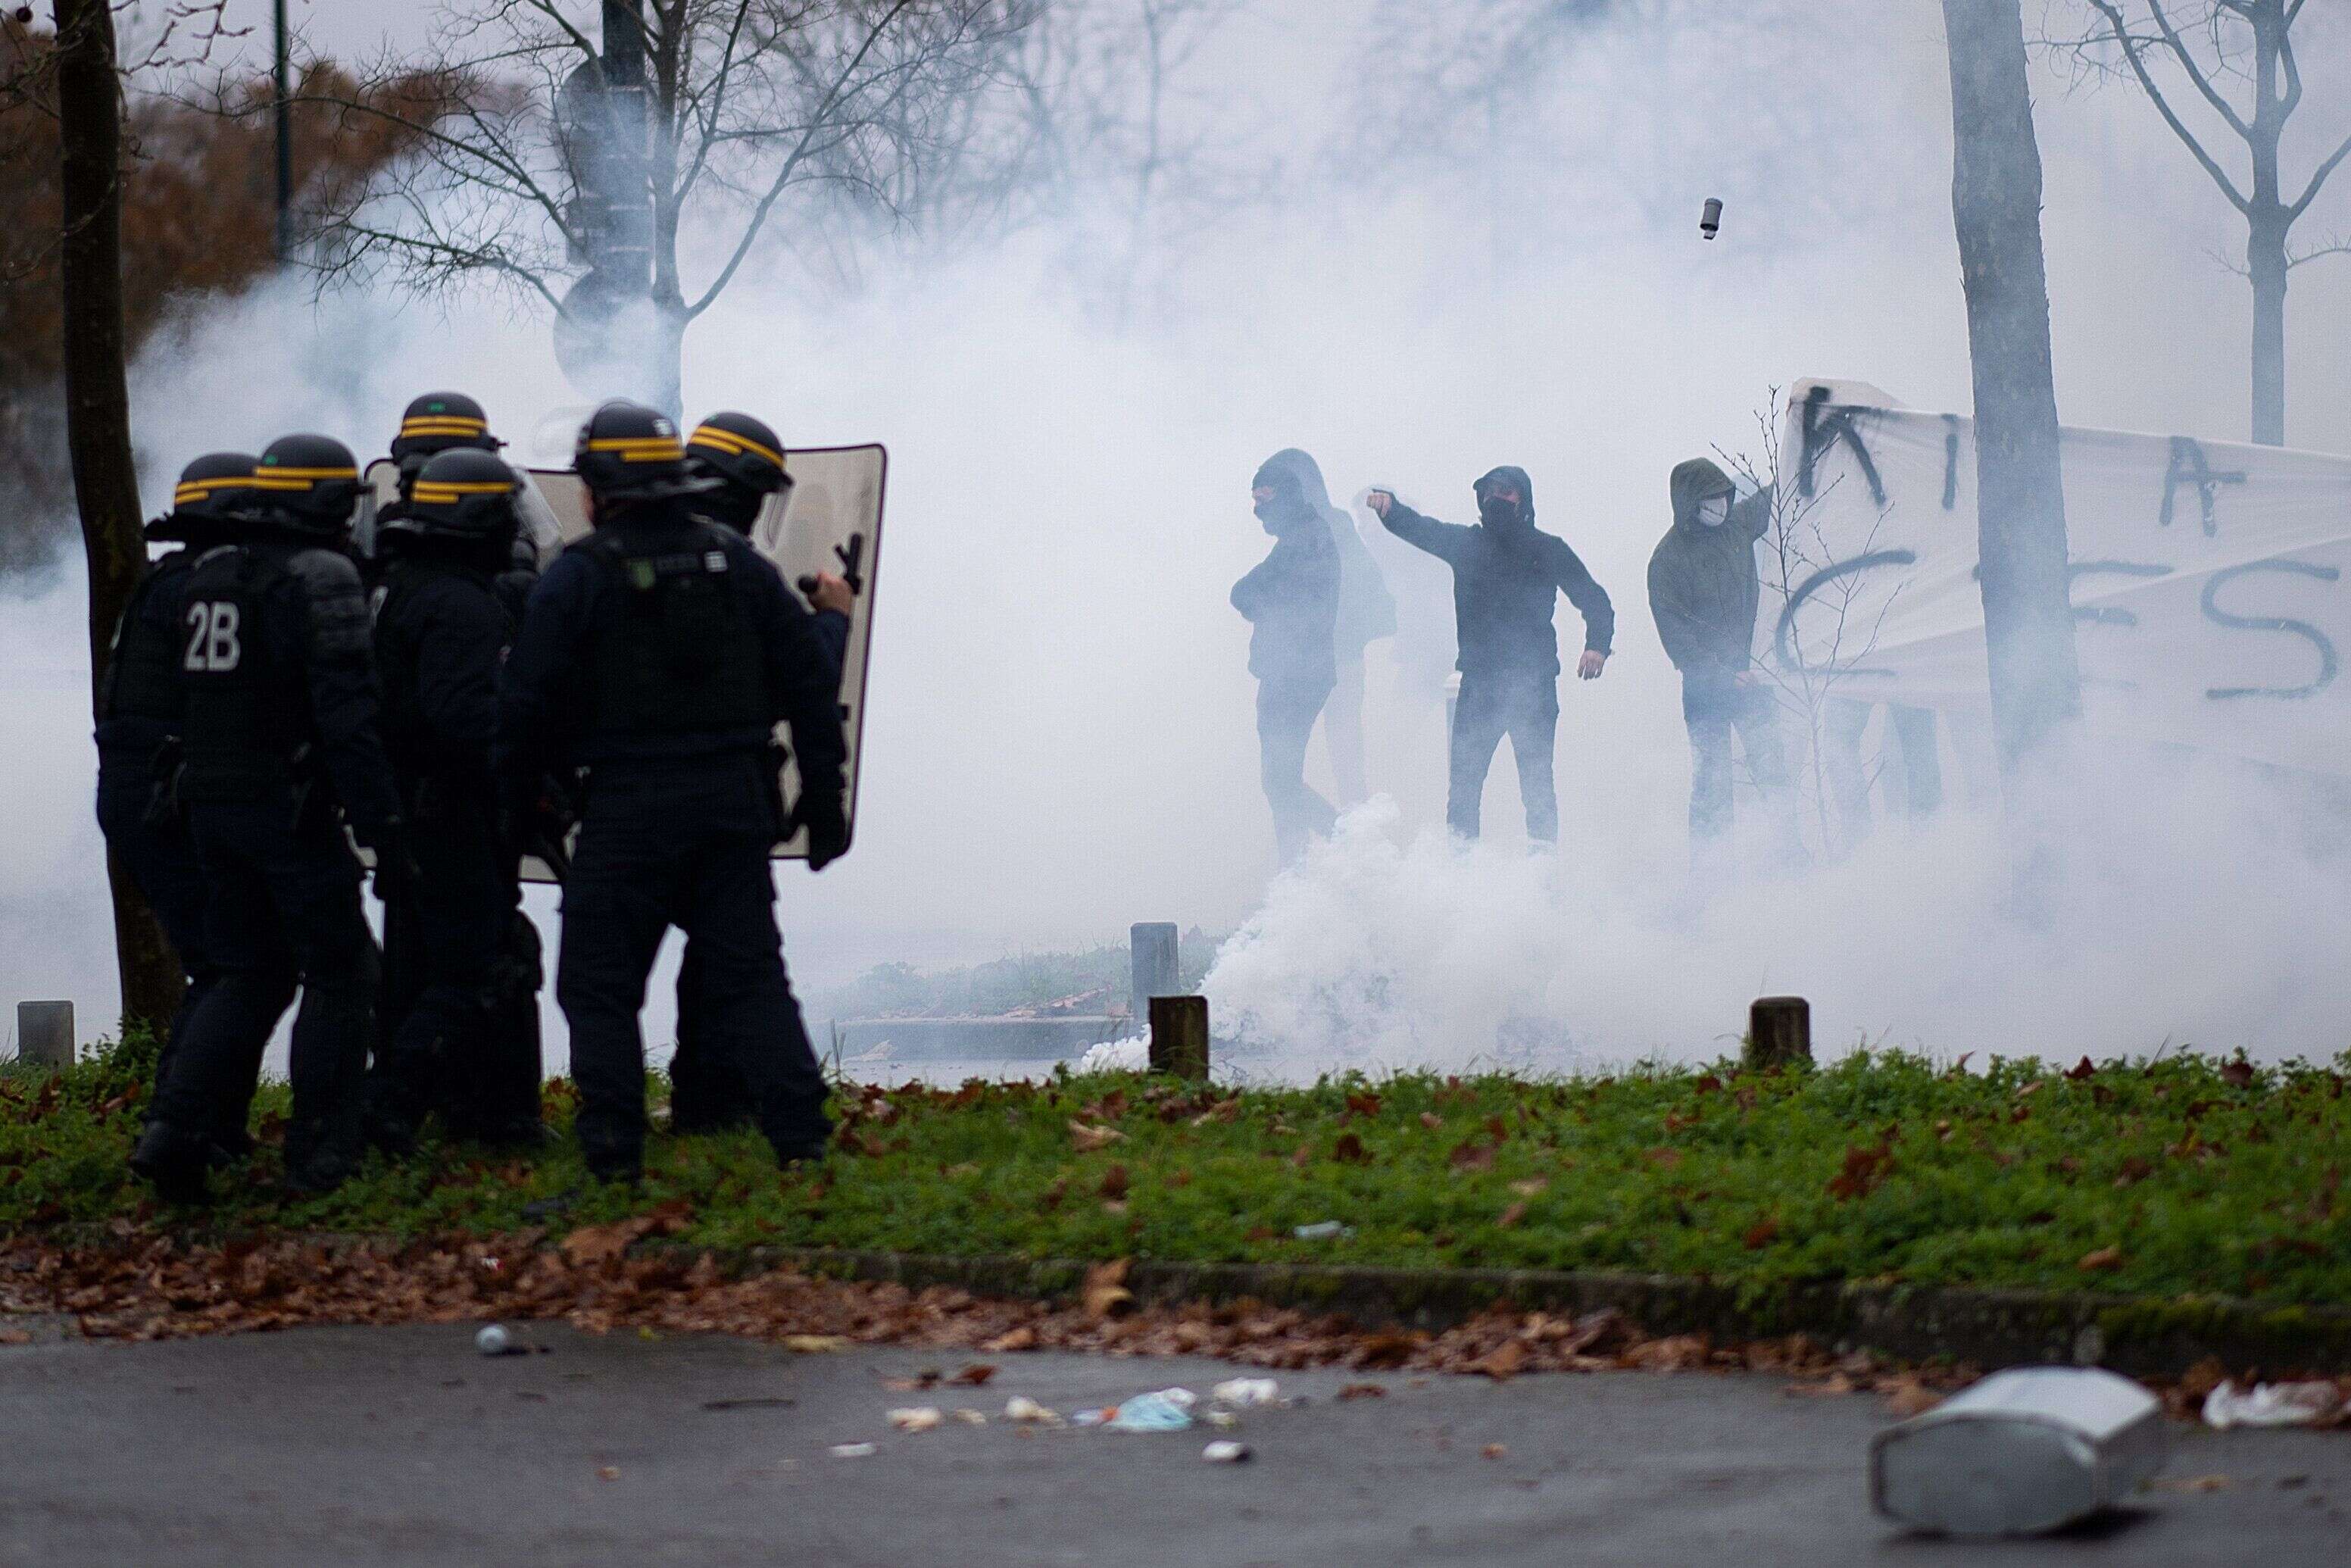 Ce dimanche 13 décembre, des supporters opposés à la direction du FC Nantes emmenée par Waldemar Kita ont manifesté à proximité du stade de la Beaujoire. Face à une très forte présence de policières, des échauffourées ont eu lieu.